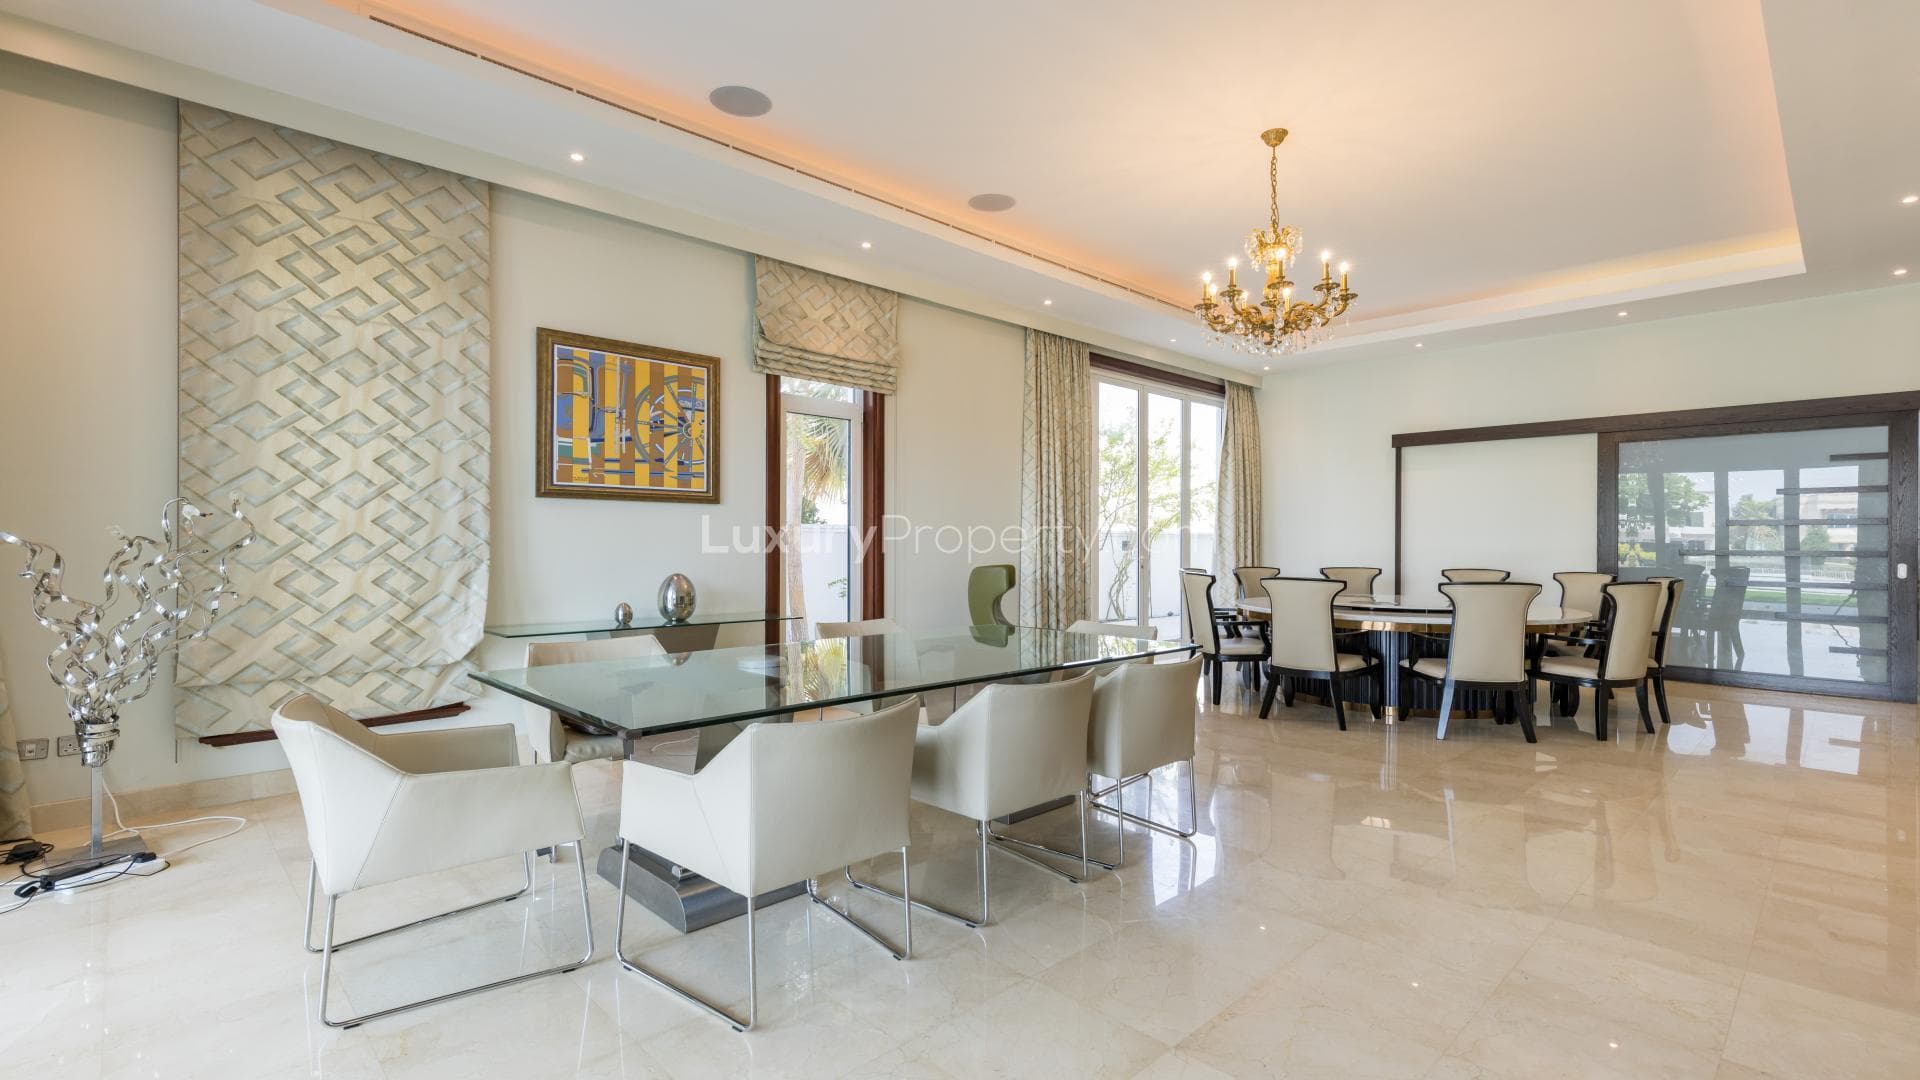 4 Bedroom Villa For Rent Emirates Hills Villas Lp20756 2fd7495cf7339e00.jpg